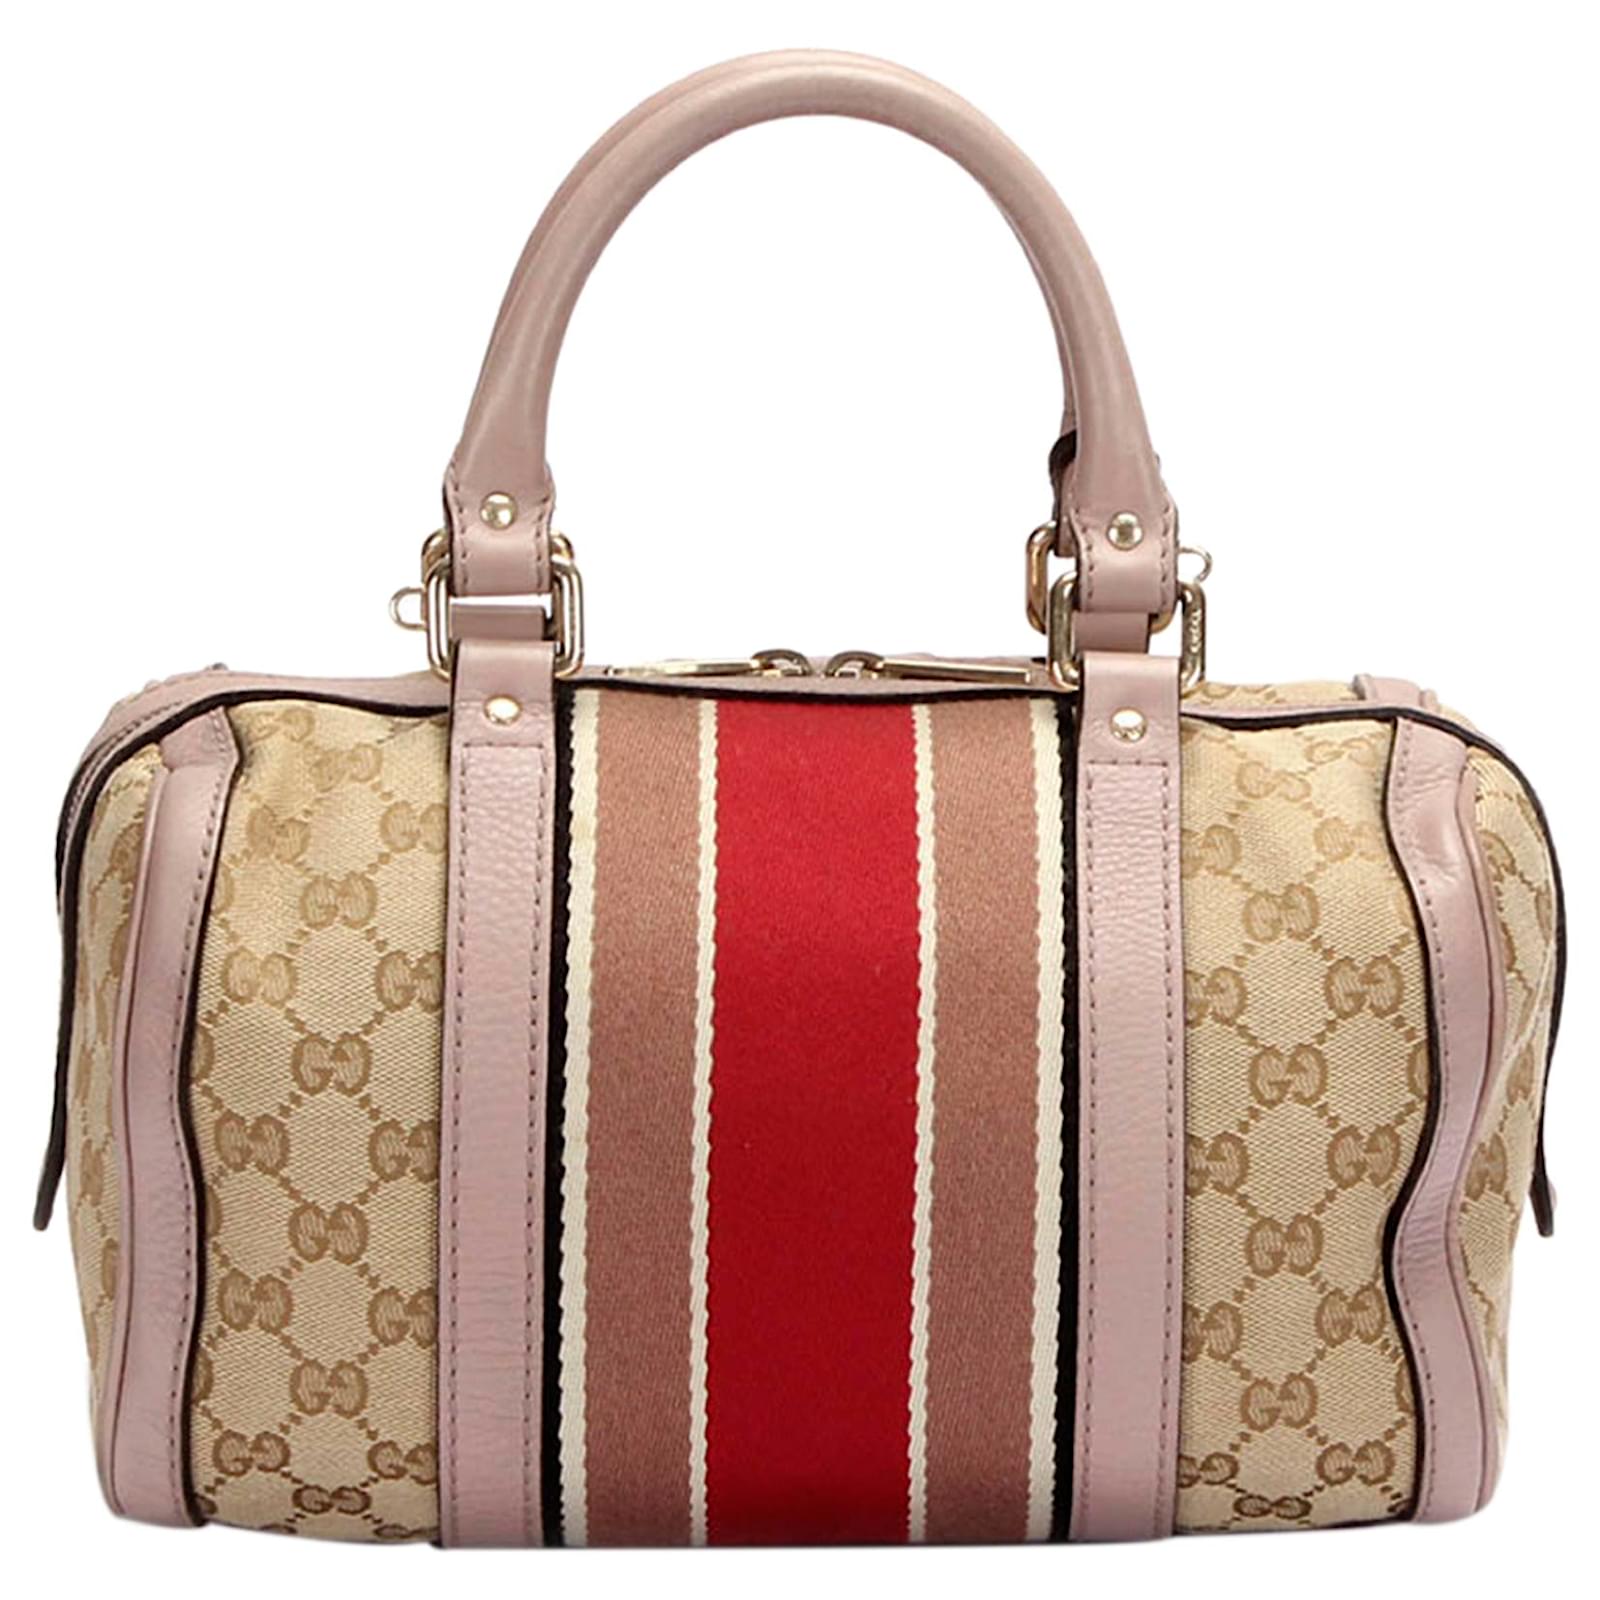 Gucci, Monogram GG Canvas Web Boston Bag, sand-colored c…